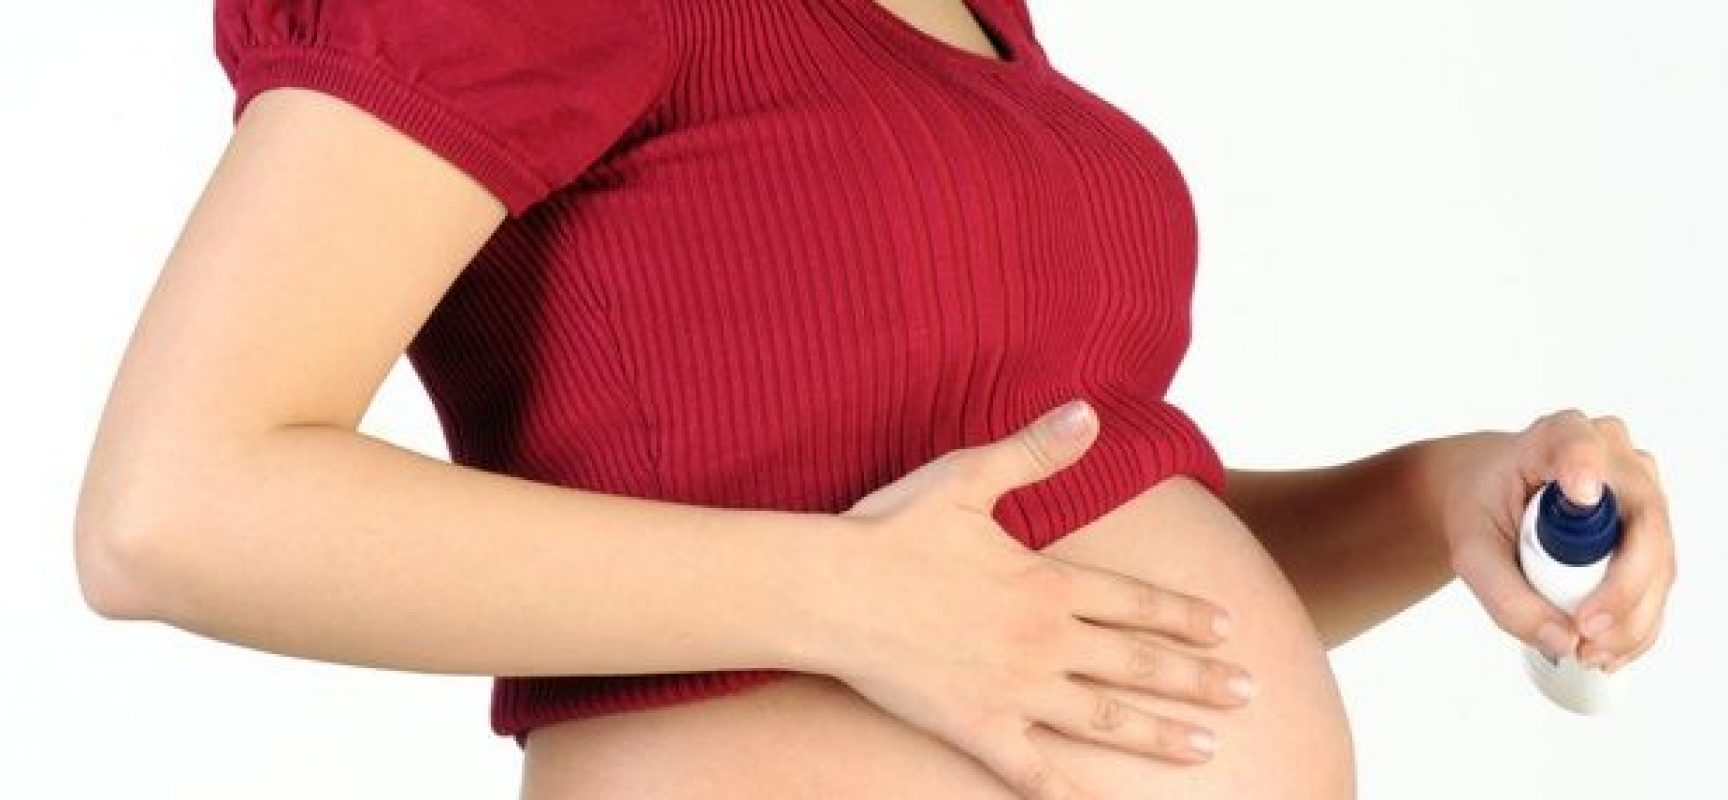 Projeto prevê atendimento psicológico obrigatório para grávidas no SUS